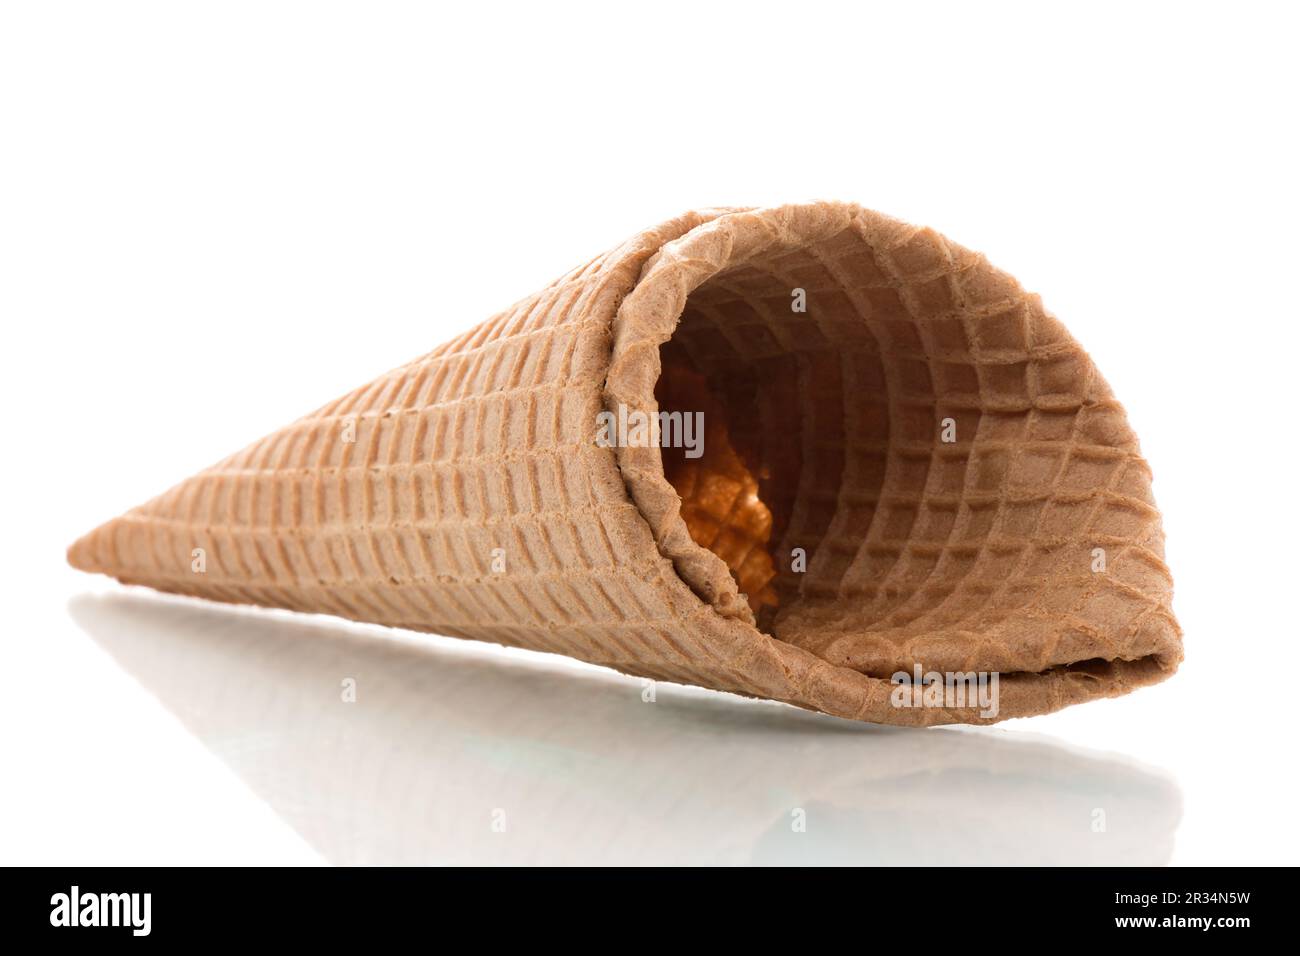 Ice cream cone without ice cream Stock Photo